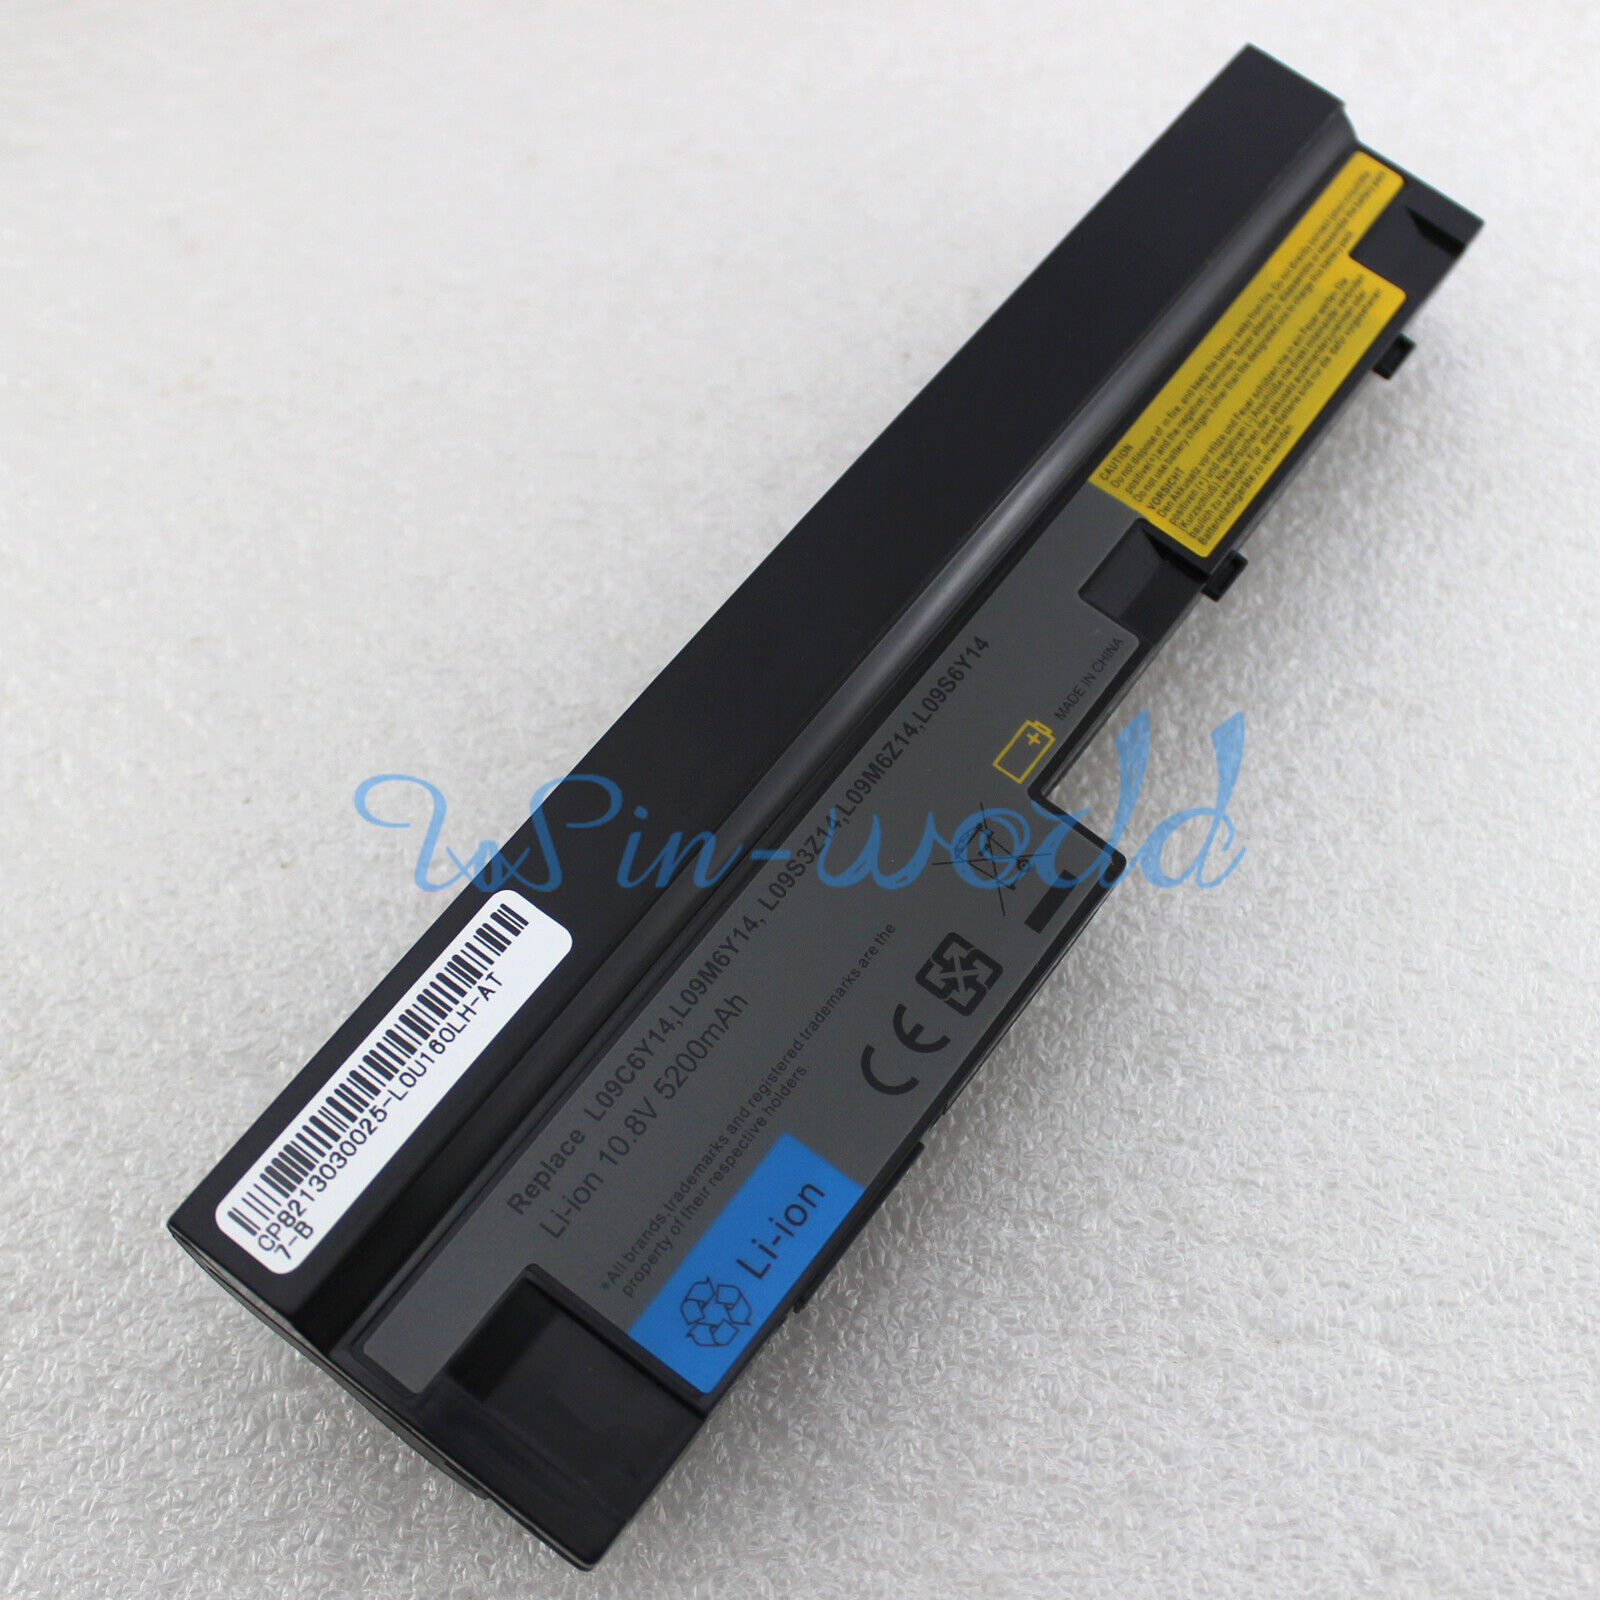 Battery for Lenovo IdeaPad S10-3 0647 S100c S110 S205 L09S6Y14 L09C6Y14 57Y6517